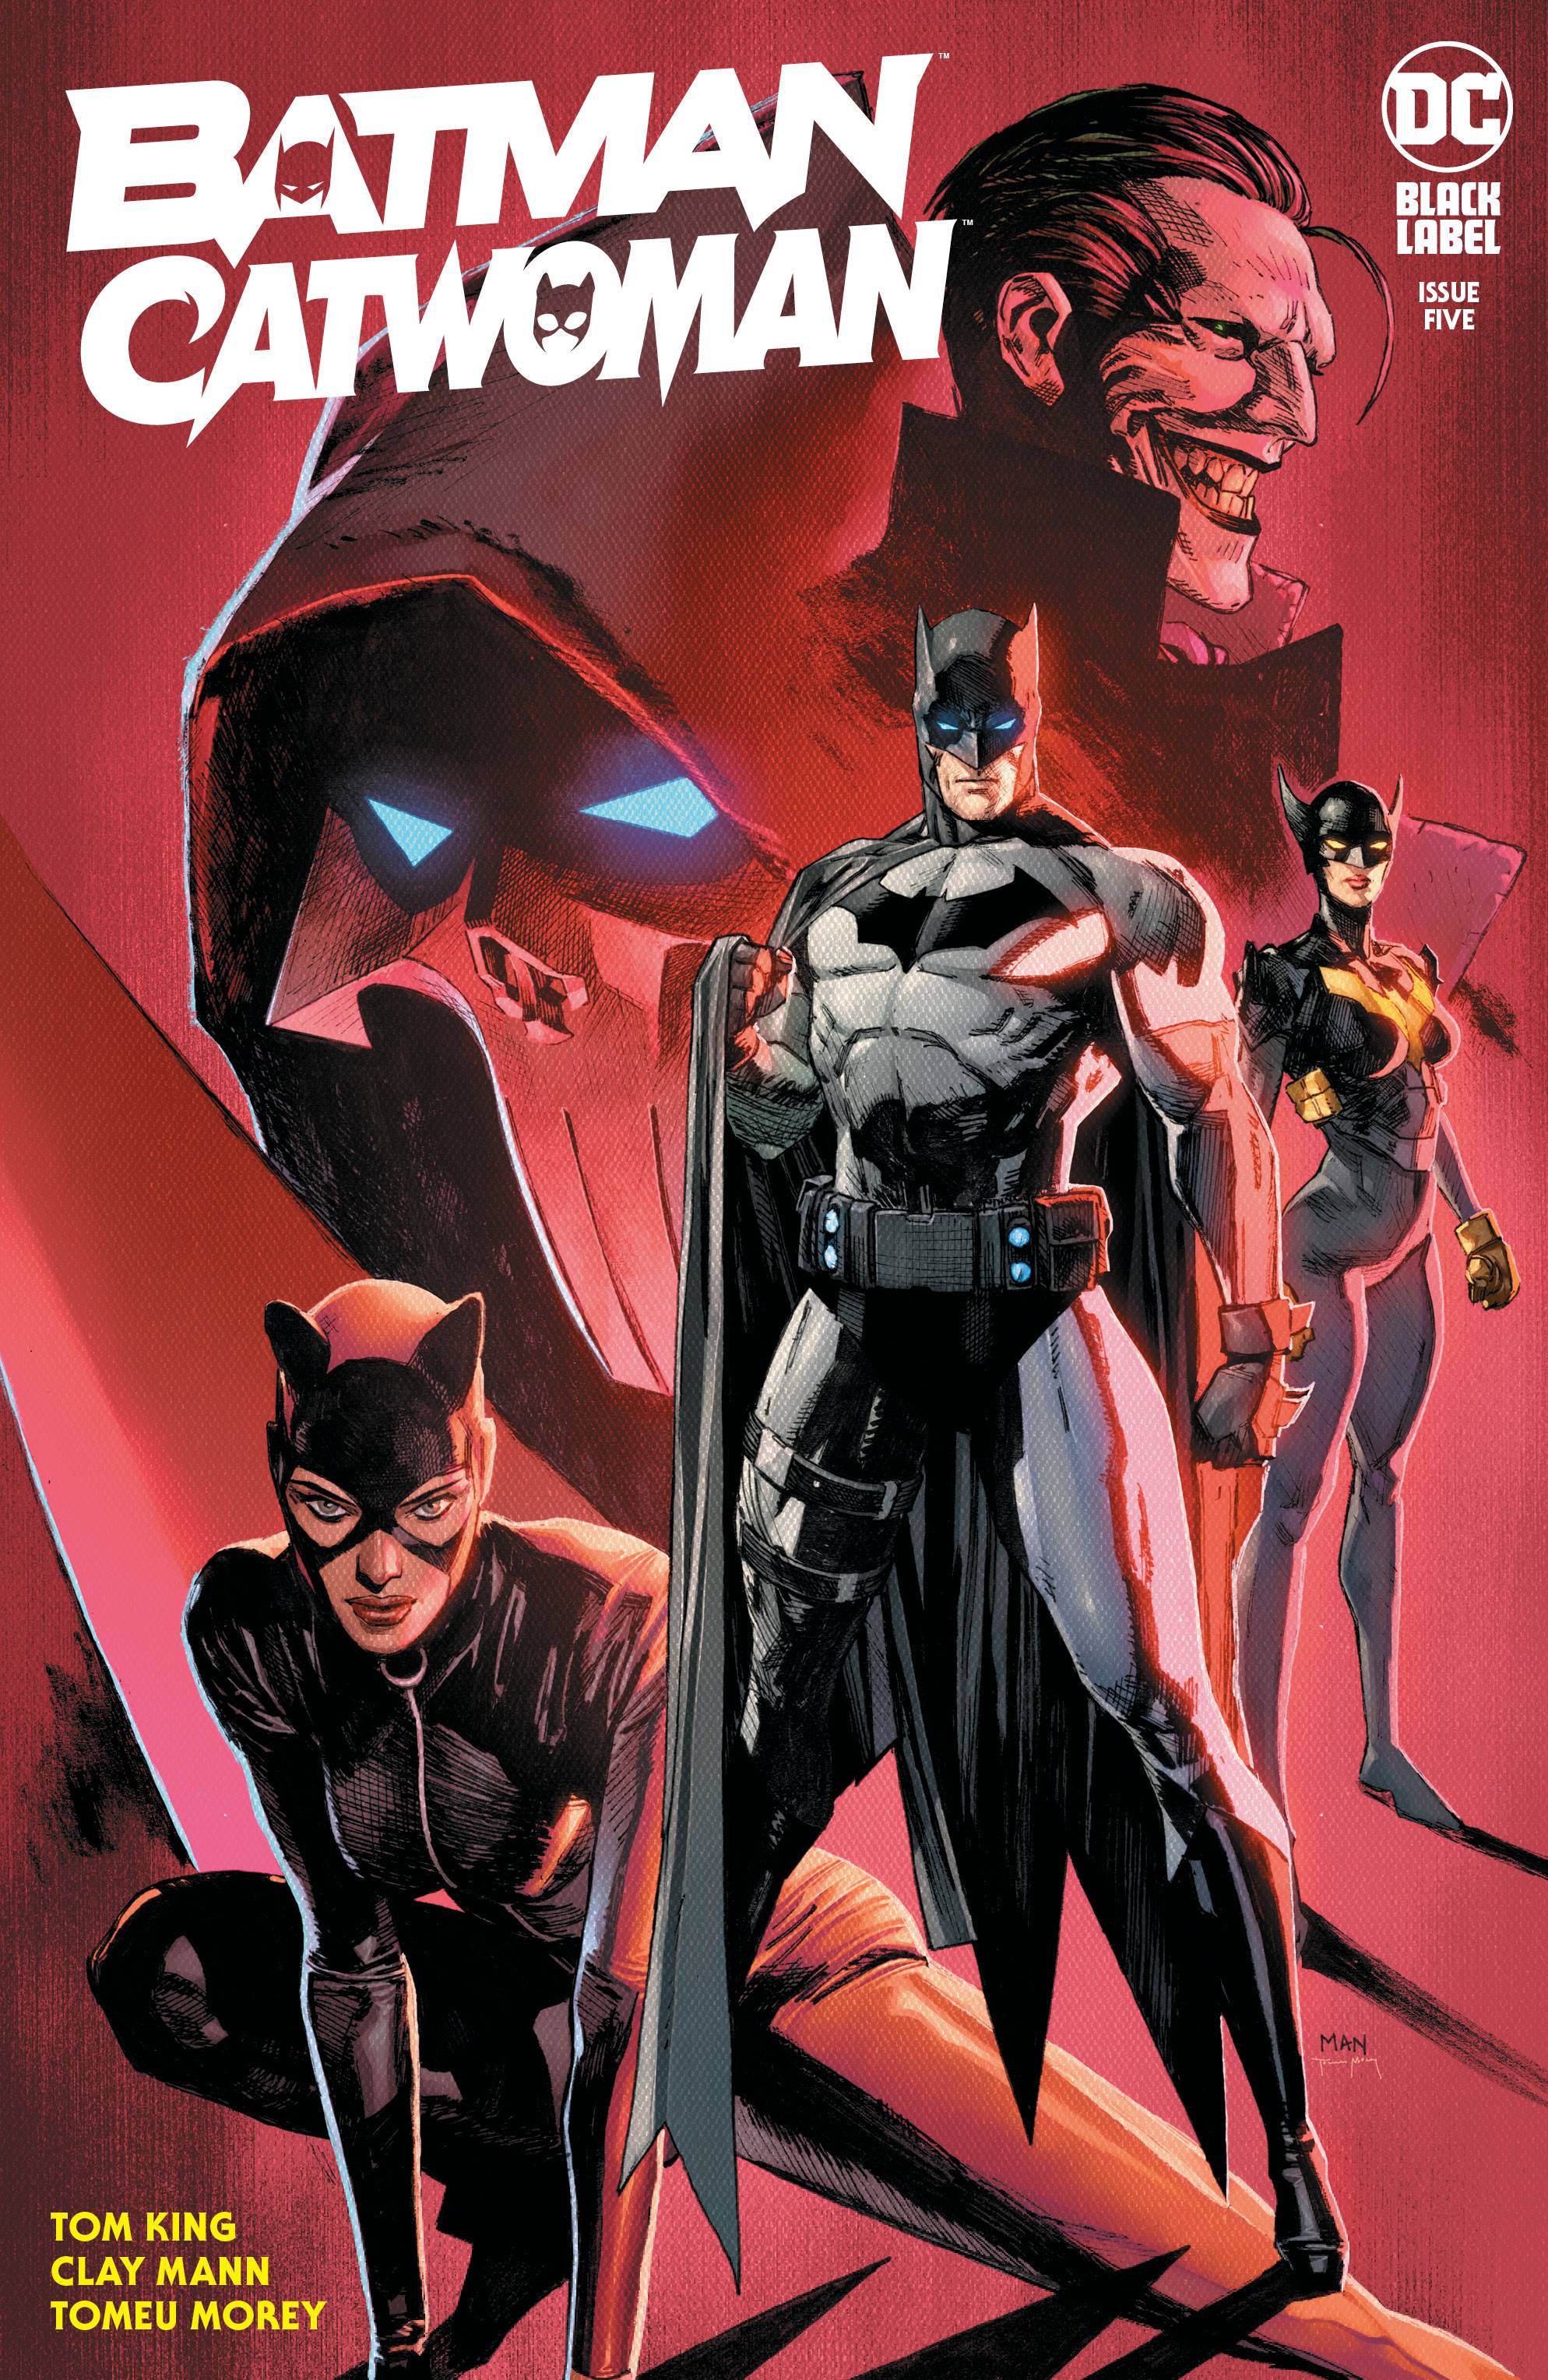 BATMAN CATWOMAN #5 CVR A MANN | L.A. Mood Comics and Games